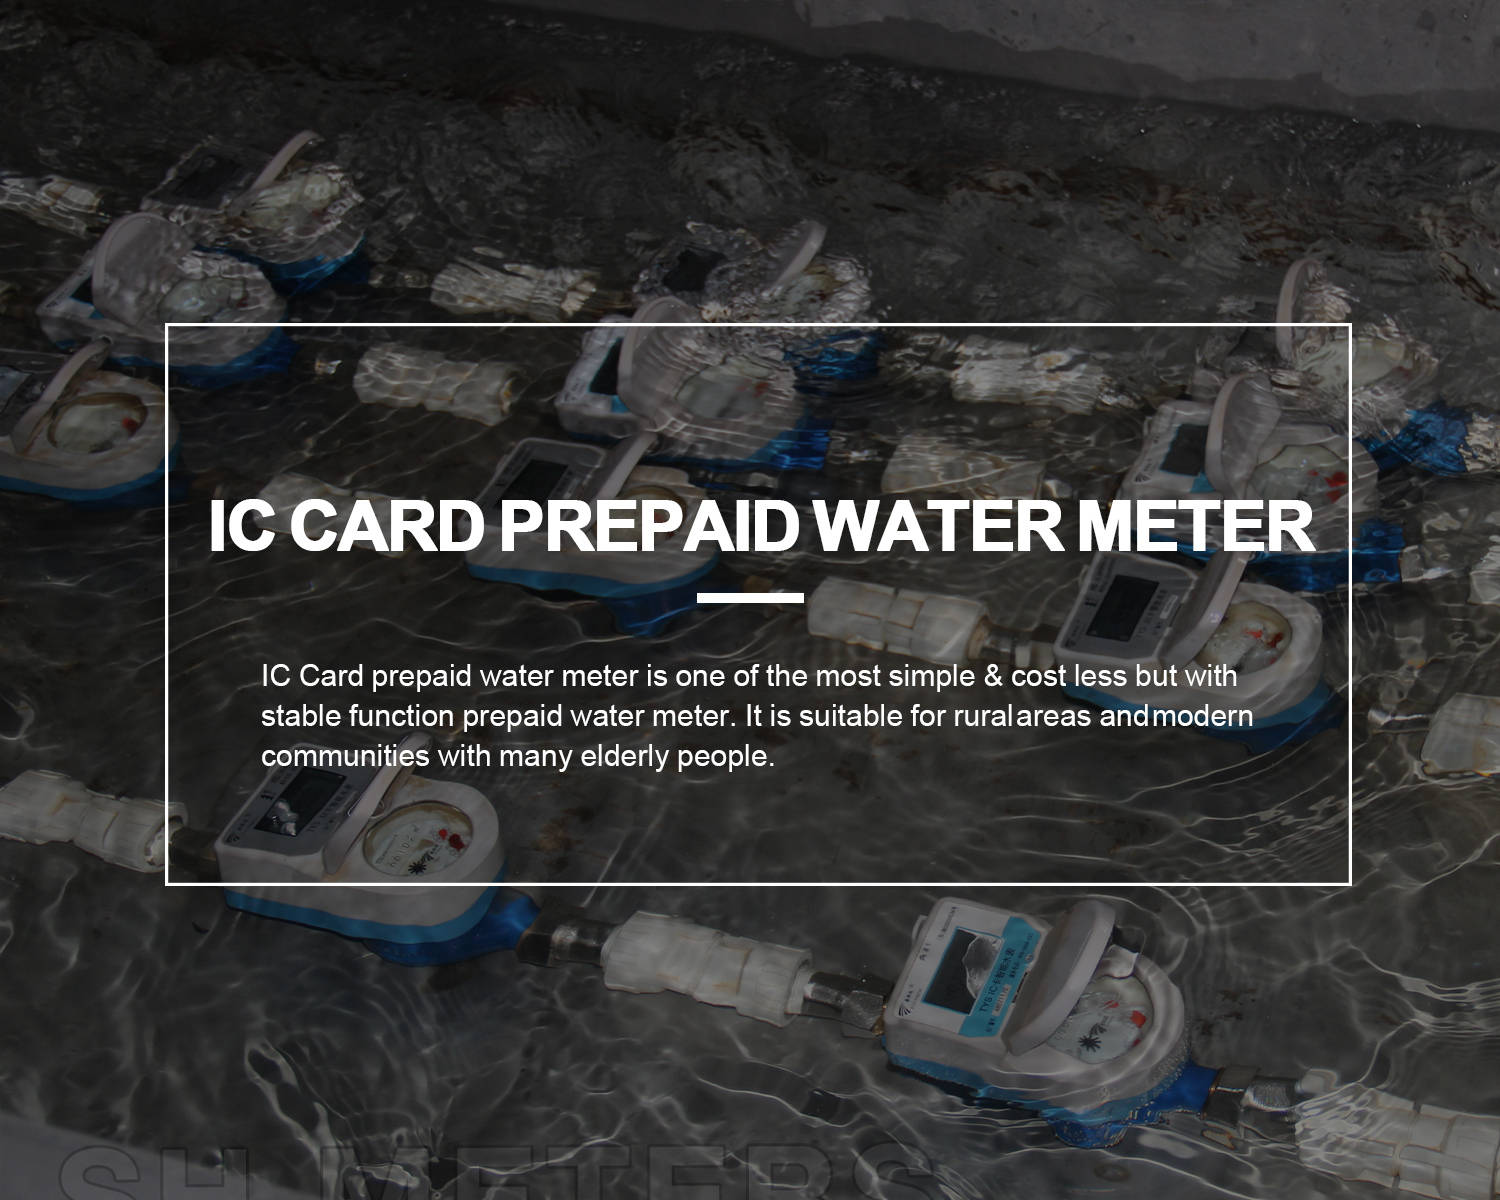 Why choose IC Card water meter?